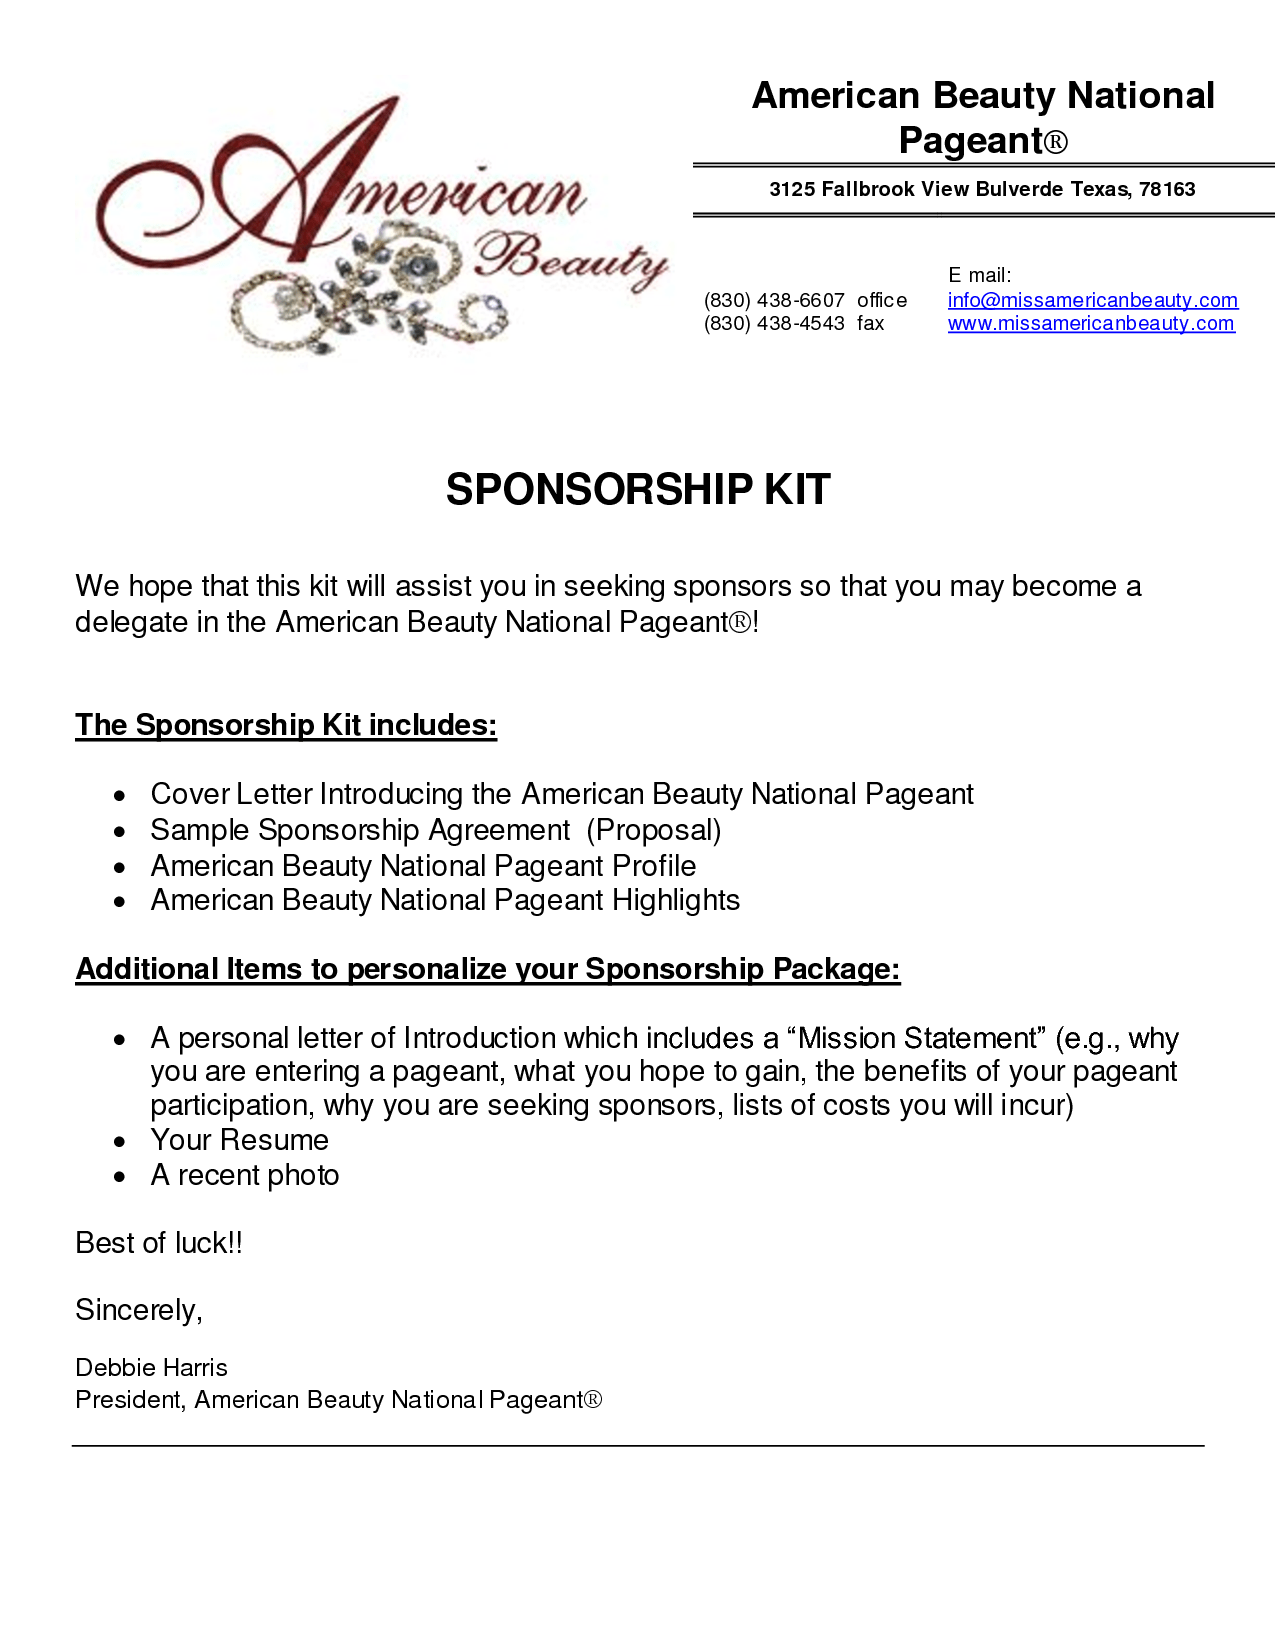 Sponsorship Proposal 1241